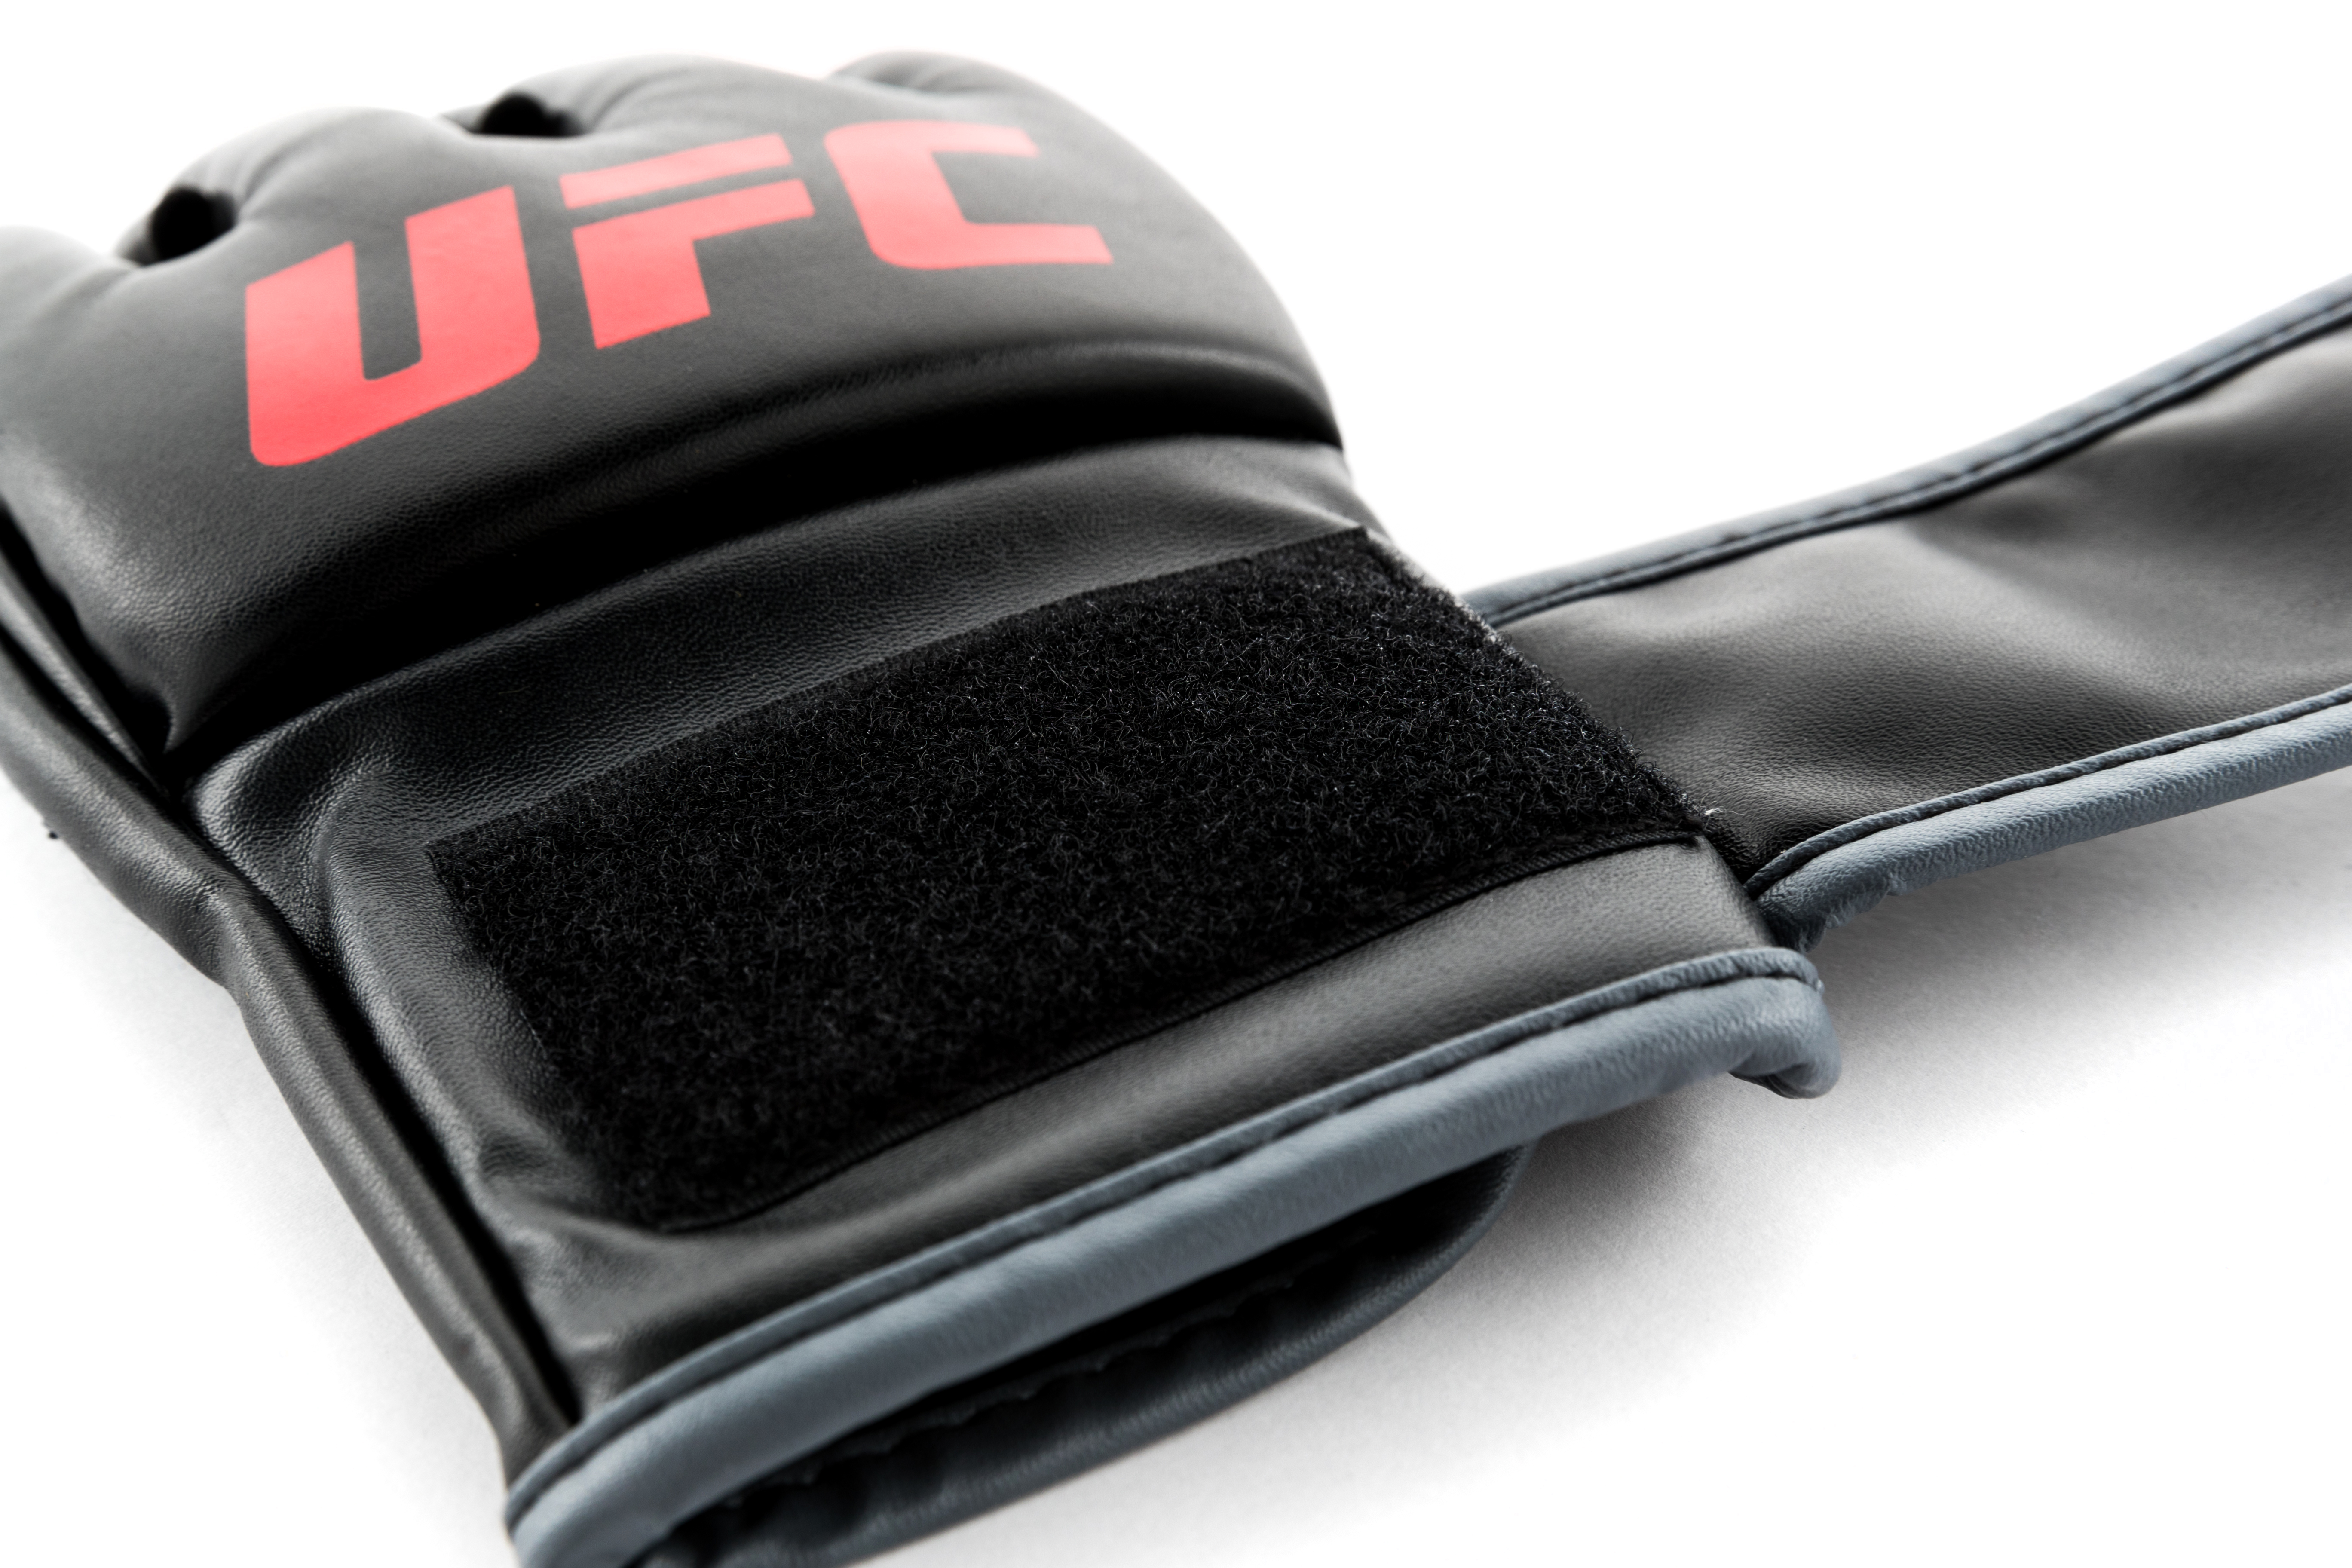 UFC MMA Gloves L/XL